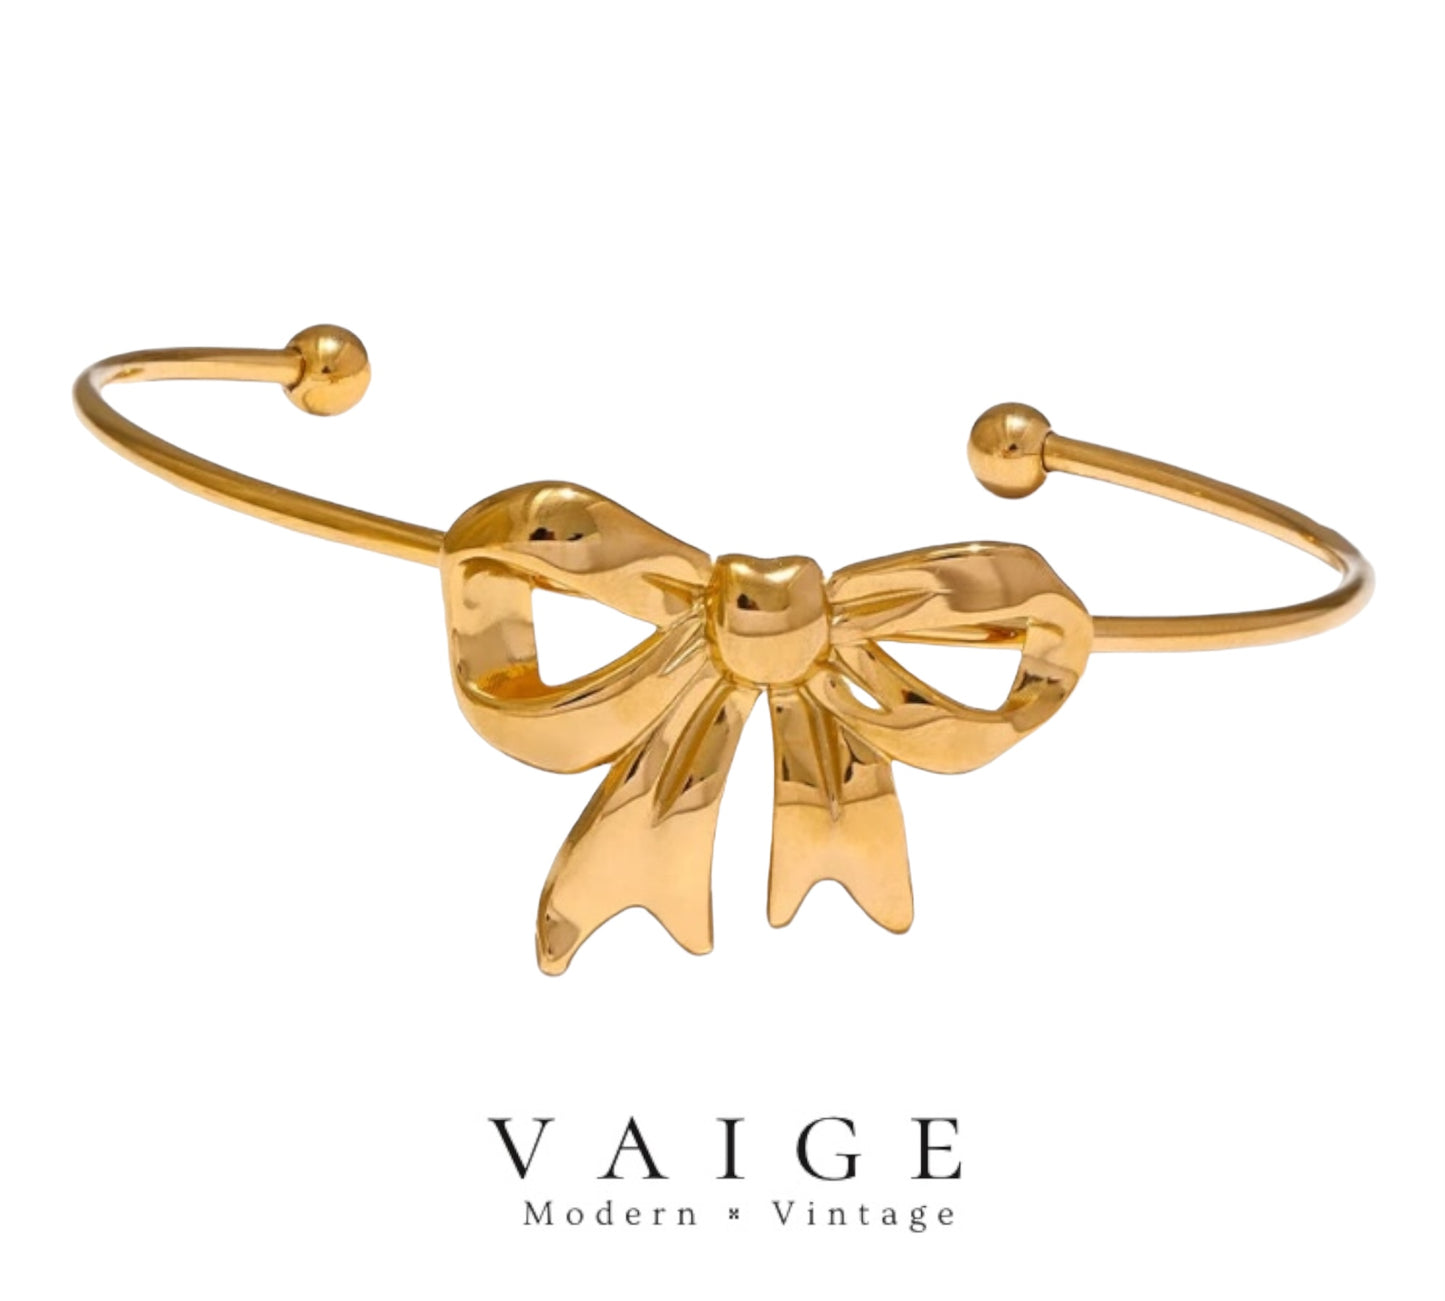 Golden Bow Stainless Steel Bracelet Bangle